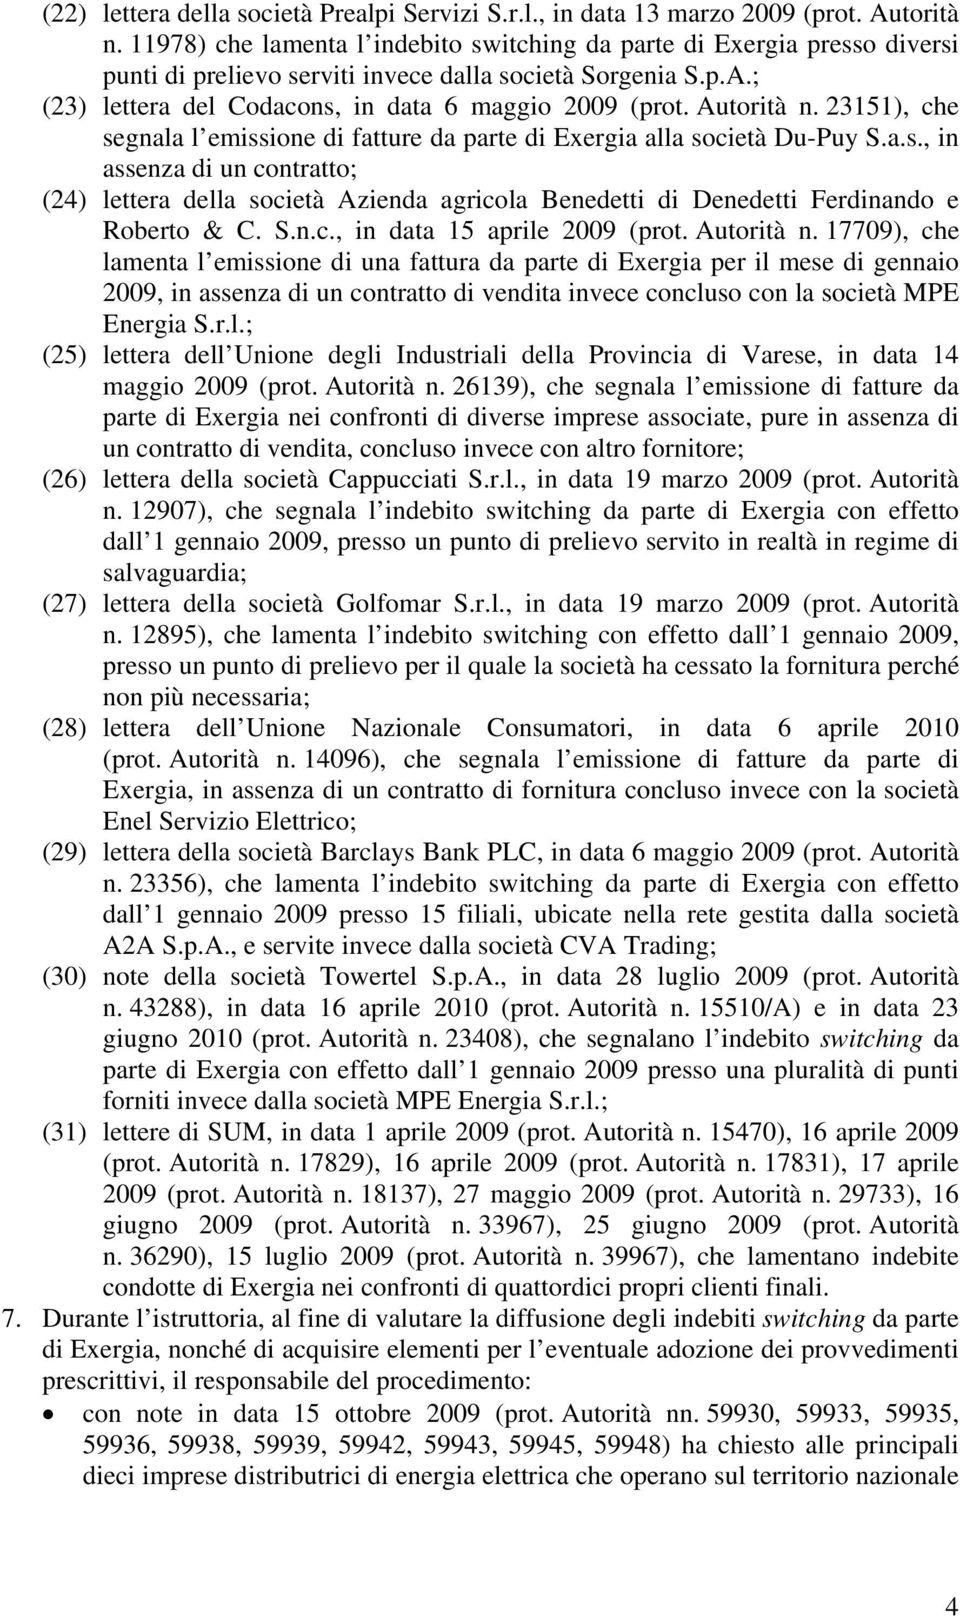 Autorità n. 23151), che segnala l emissione di fatture da parte di Exergia alla società Du-Puy S.a.s., in assenza di un contratto; (24) lettera della società Azienda agricola Benedetti di Denedetti Ferdinando e Roberto & C.